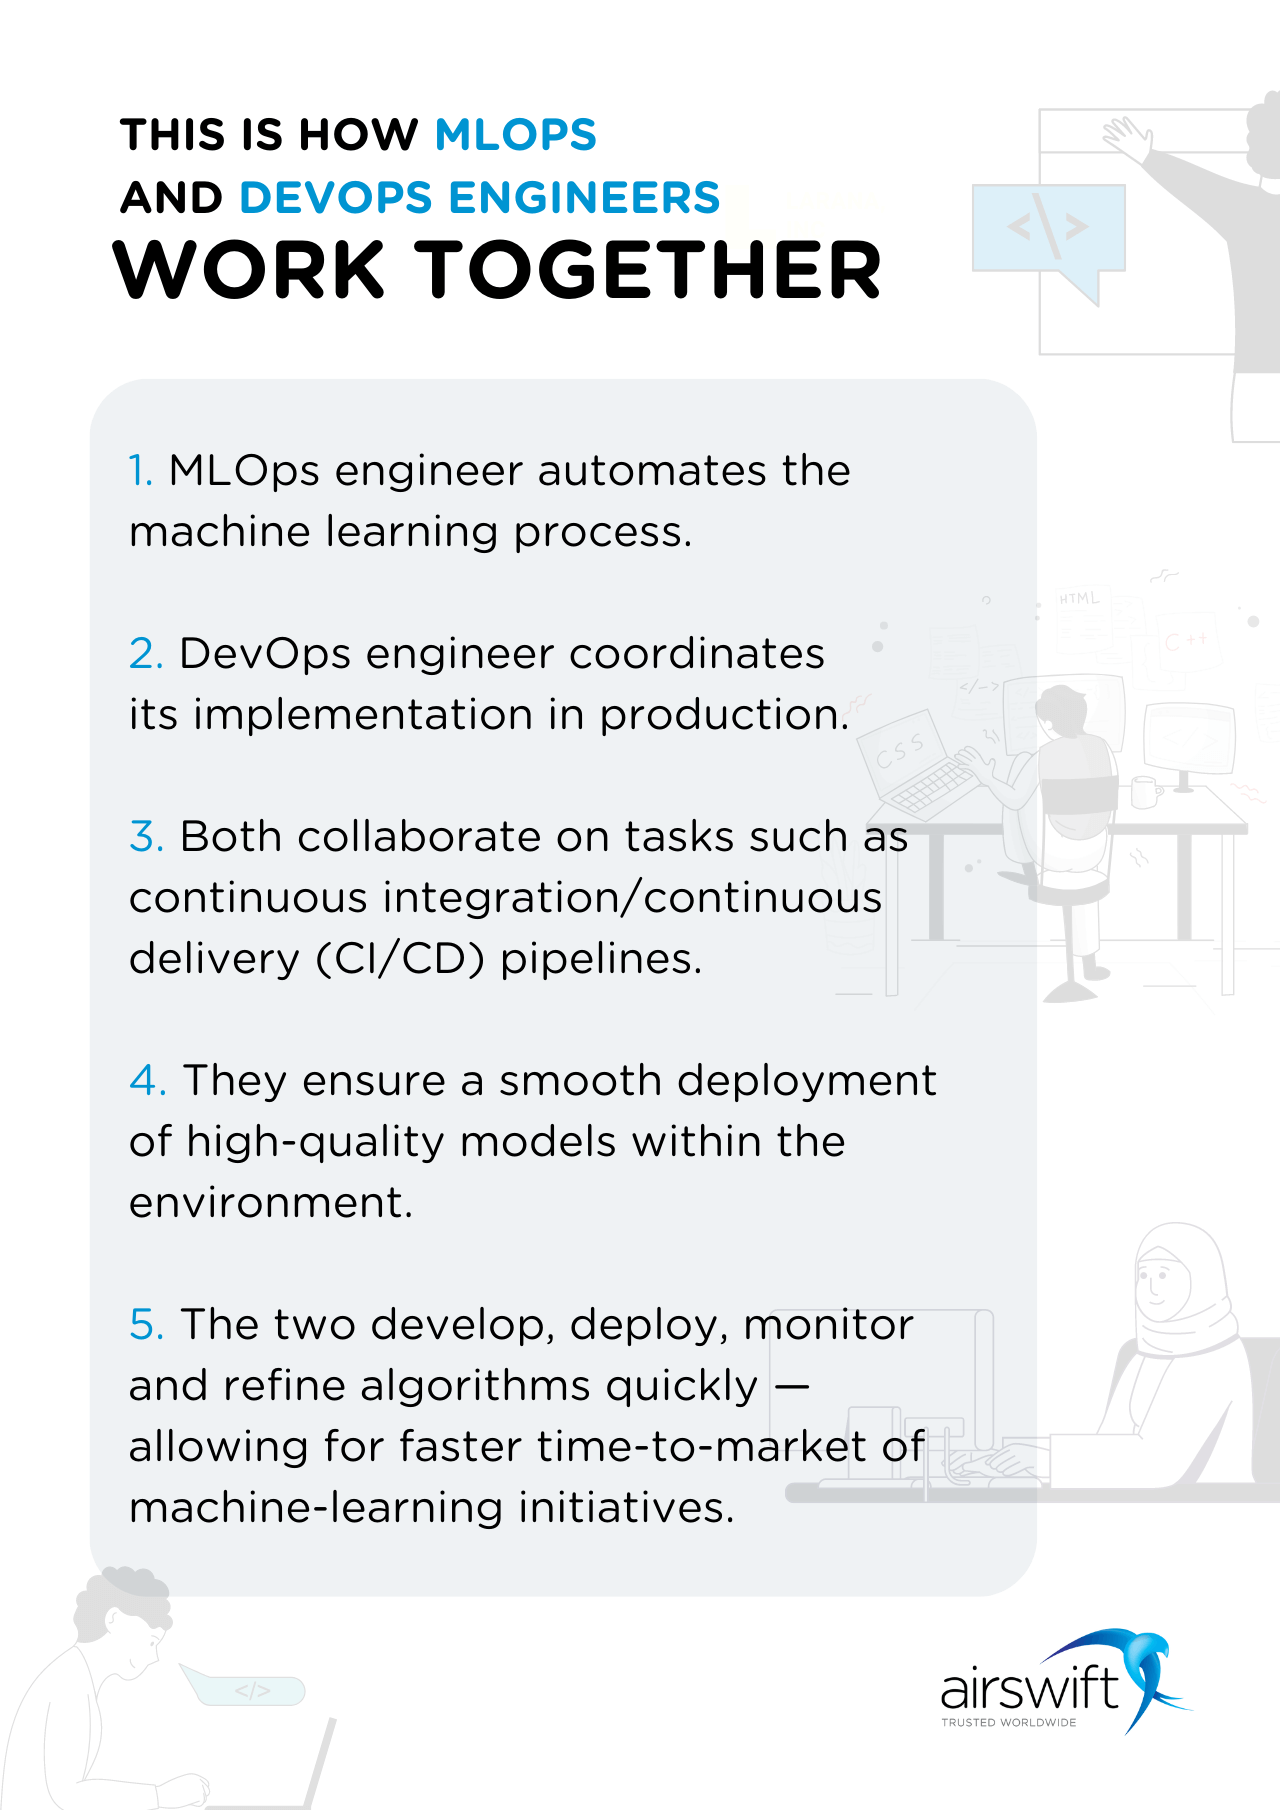 How MLOps and DevOps work together